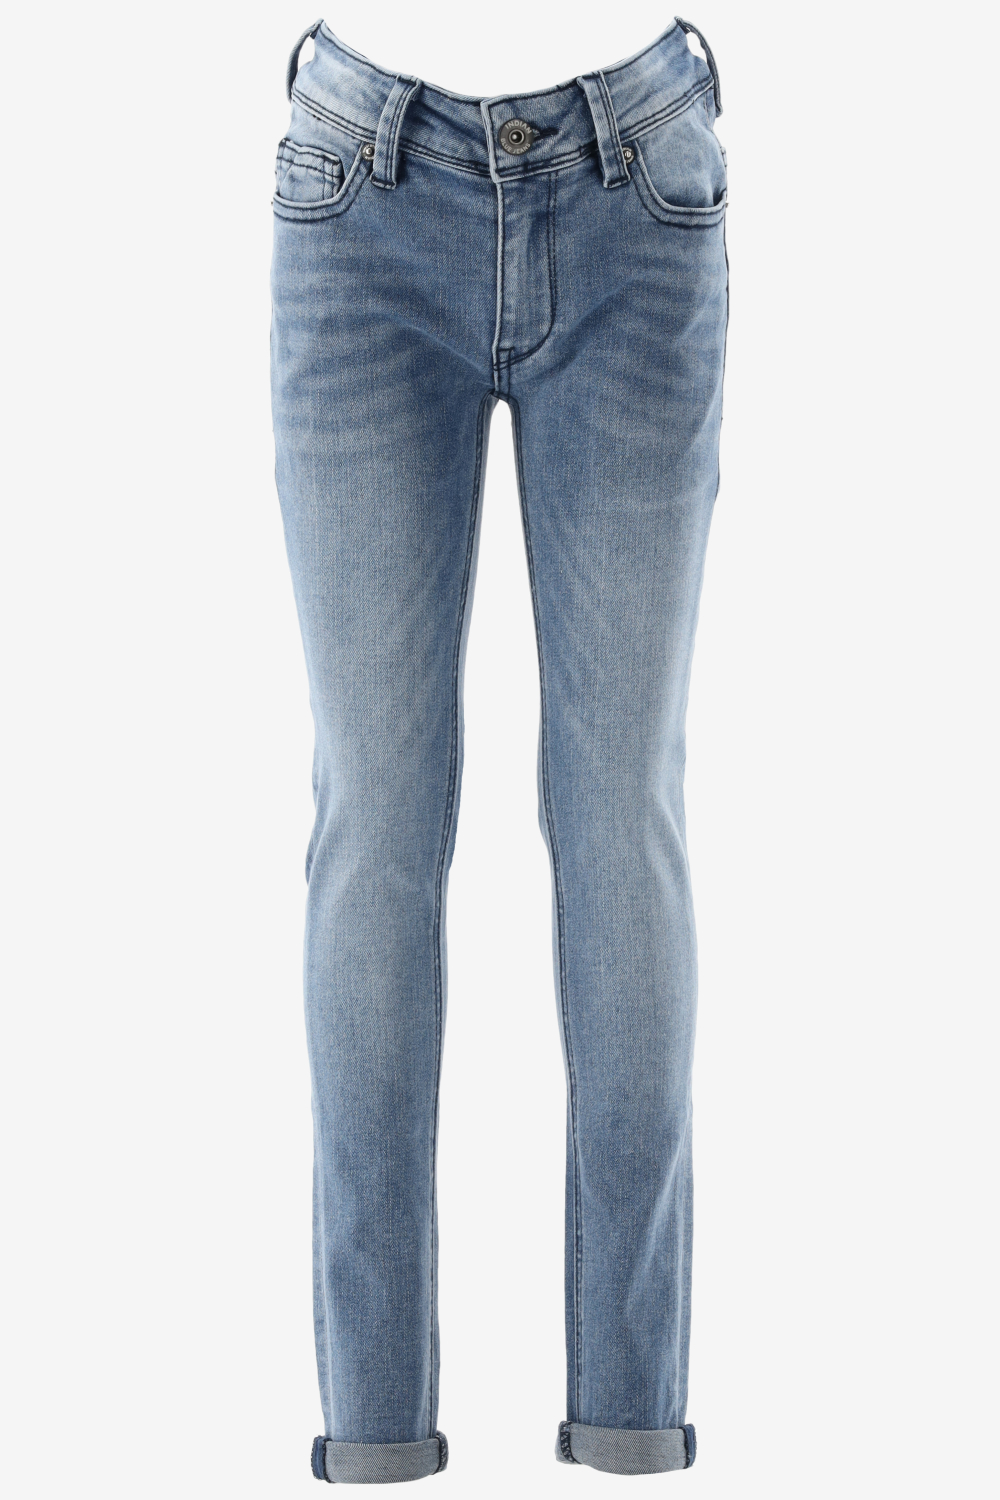 Indian Blue Jeans Blue Ryan Skinny Fit Jeans Jongens - Broek - Blauw - Maat 158